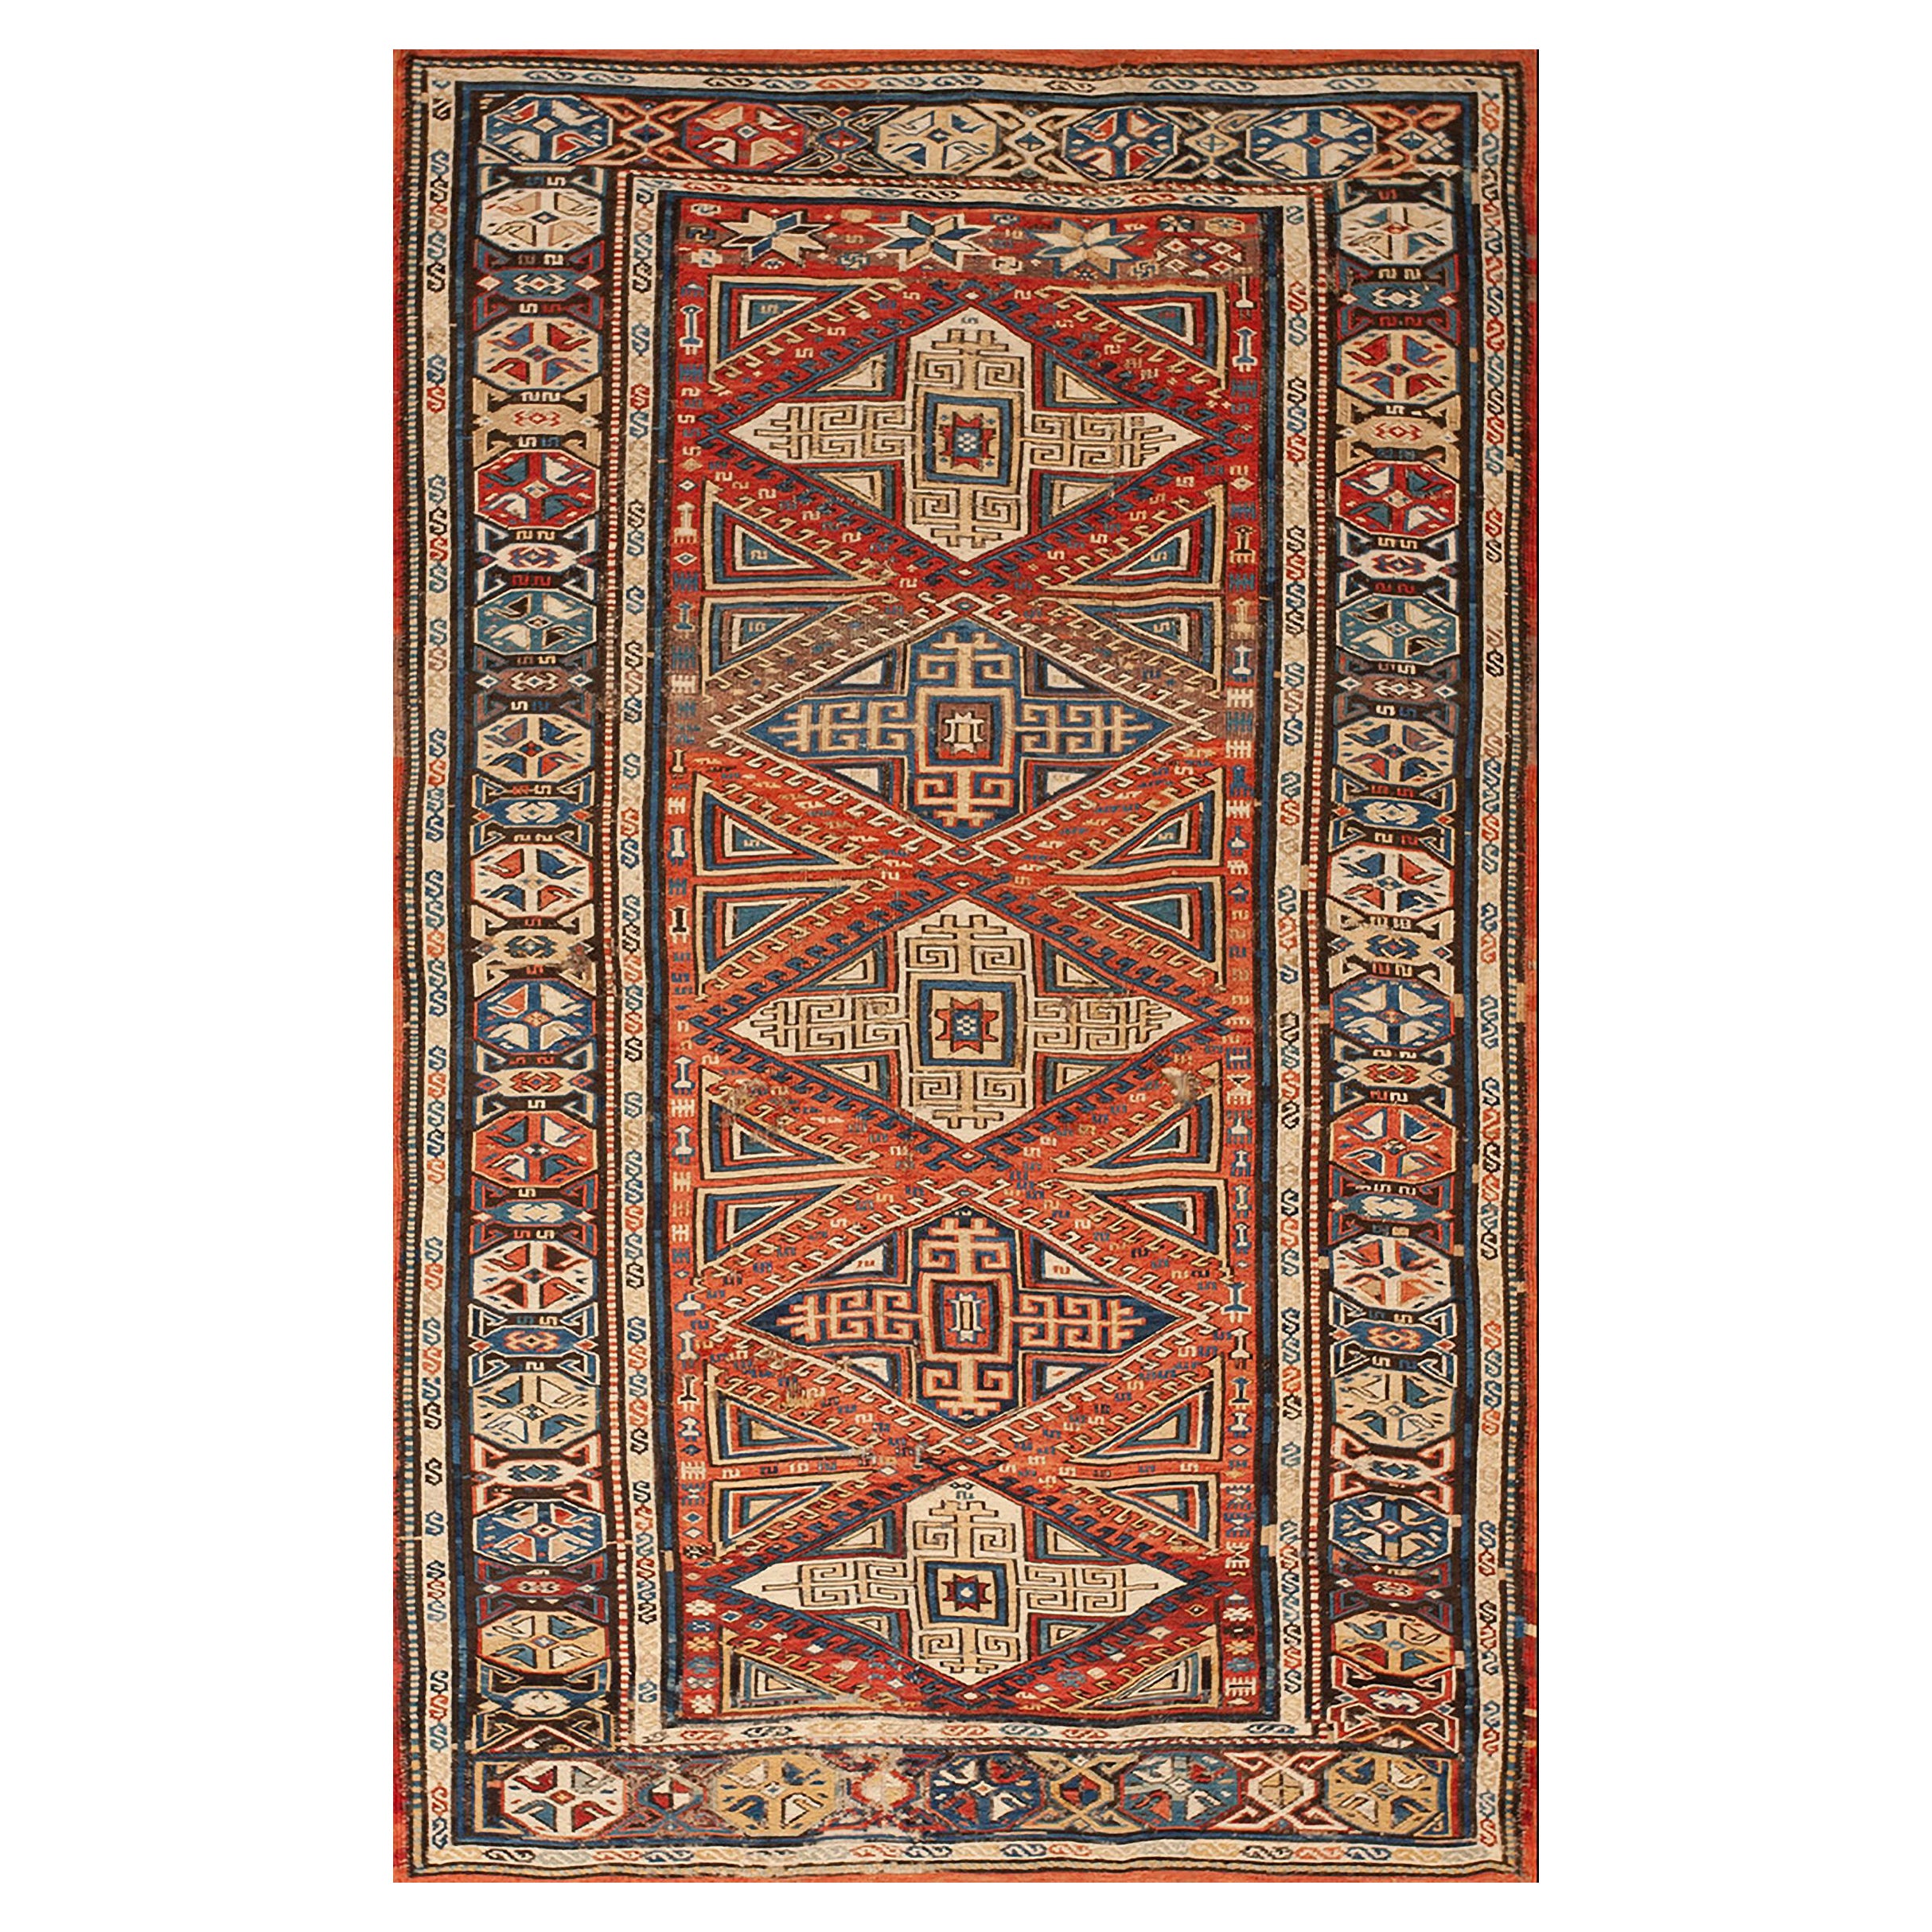 19th Century Caucasian Sumak Carpet ( 3'8" x 6'3" - 112 x 191 )